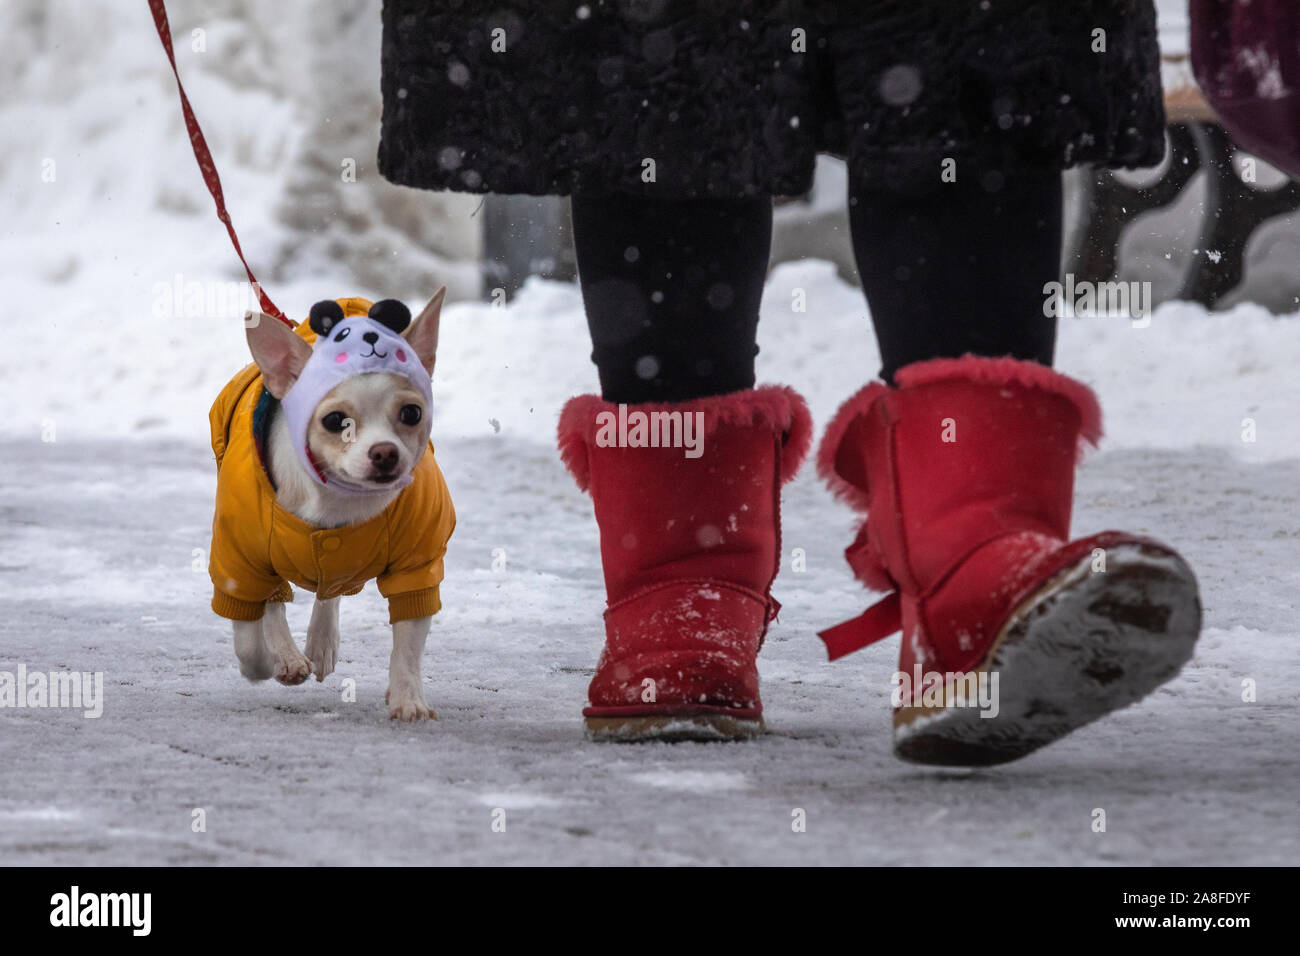 Une femme marche avec un chien chihuahua durant une chute de neige dans un parc de la ville Banque D'Images